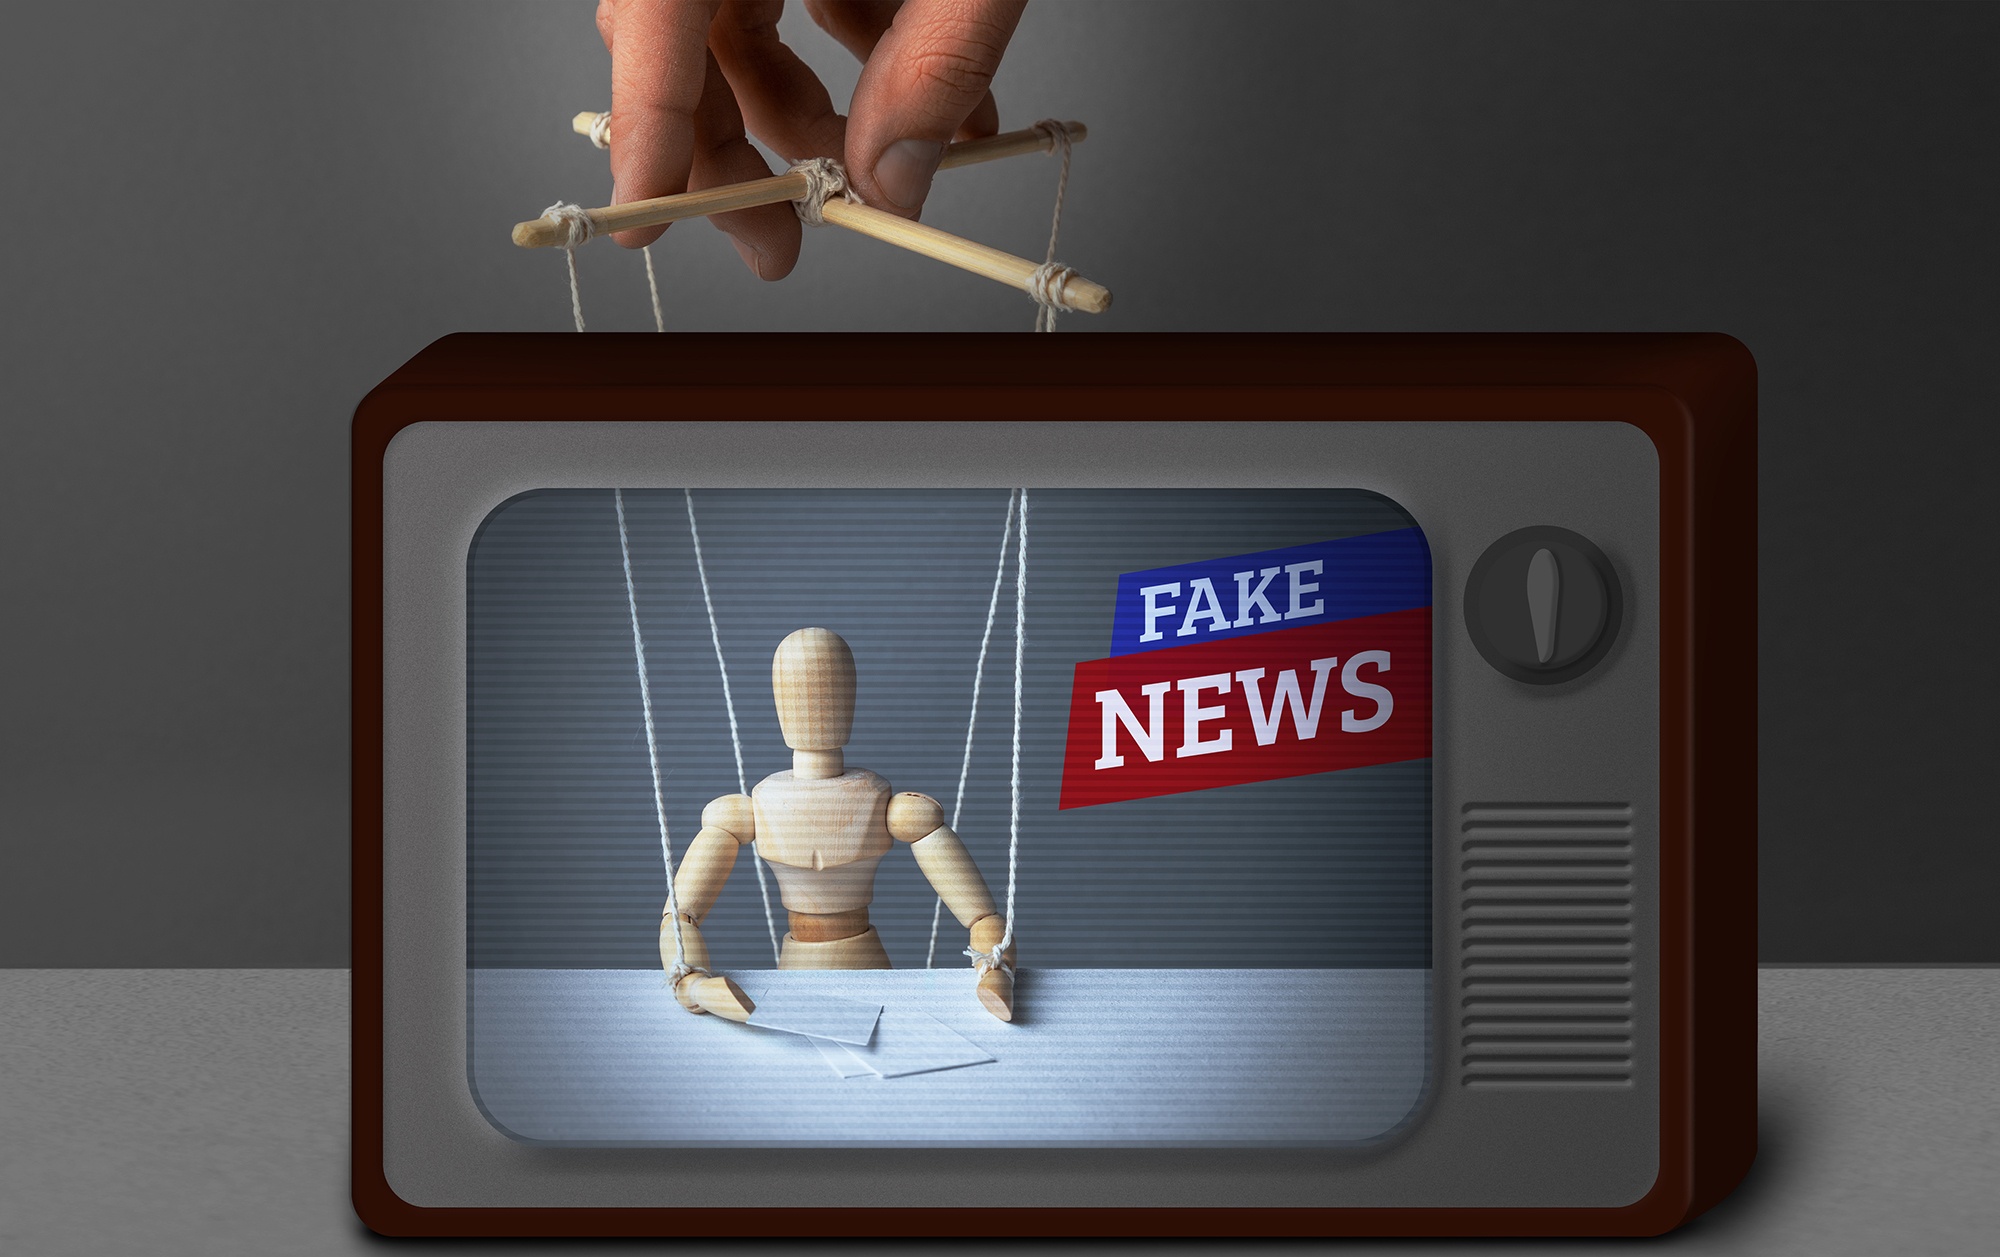 A foto mostra a tela de uma televisão antiga que apresenta a imagem de um boneco de madeira articulado com cordas amarrada (marionete) e os dizeres "Fake News".